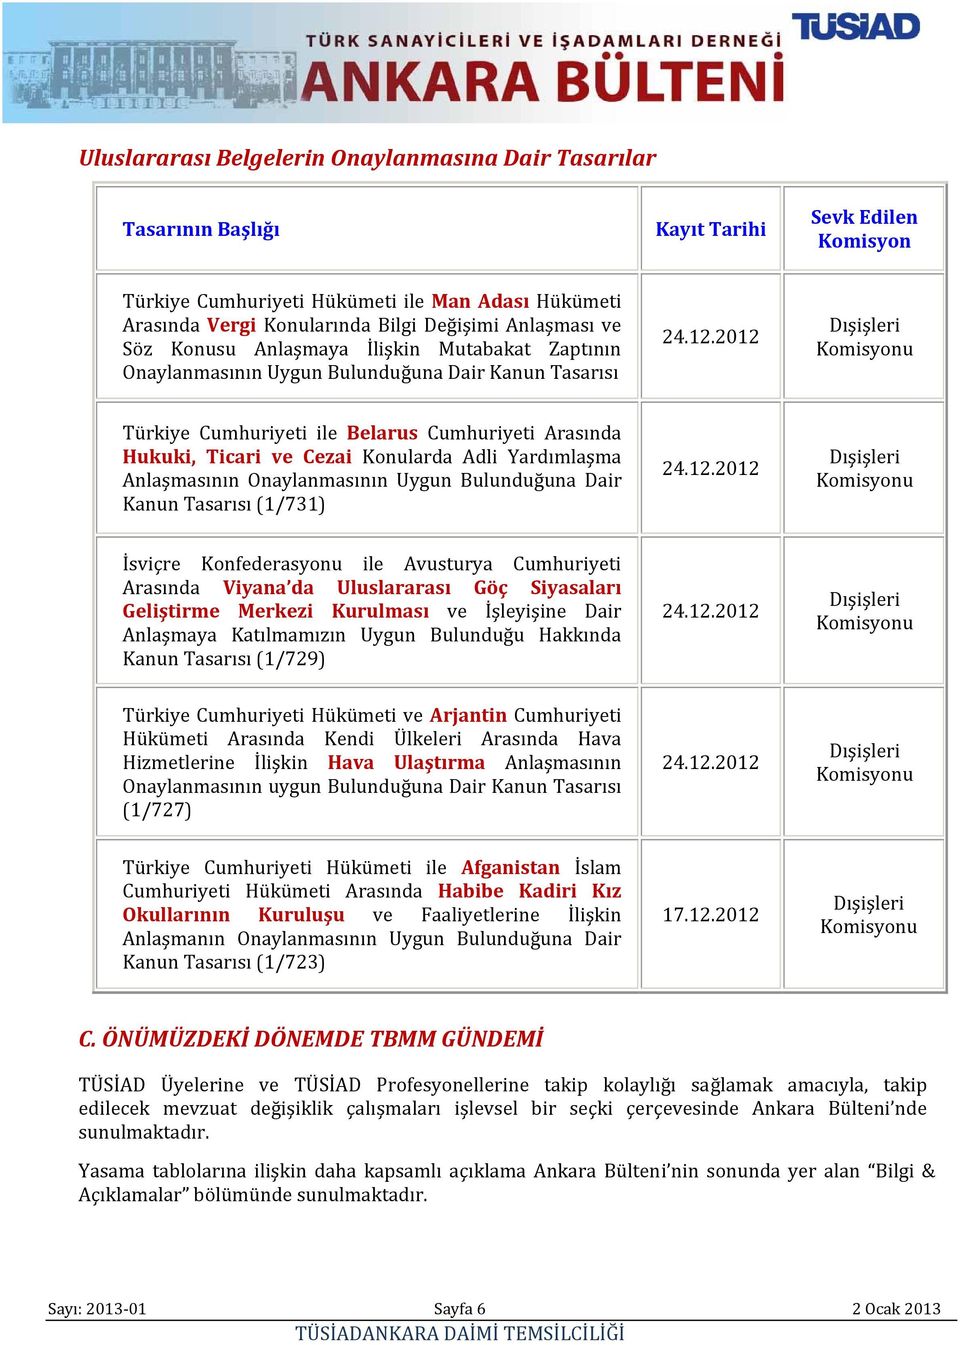 2012 Dışişleri Türkiye Cumhuriyeti ile Belarus Cumhuriyeti Arasında Hukuki, Ticari ve Cezai Konularda Adli Yardımlaşma Anlaşmasının Onaylanmasının Uygun Bulunduğuna Dair Kanun Tasarısı (1/731)